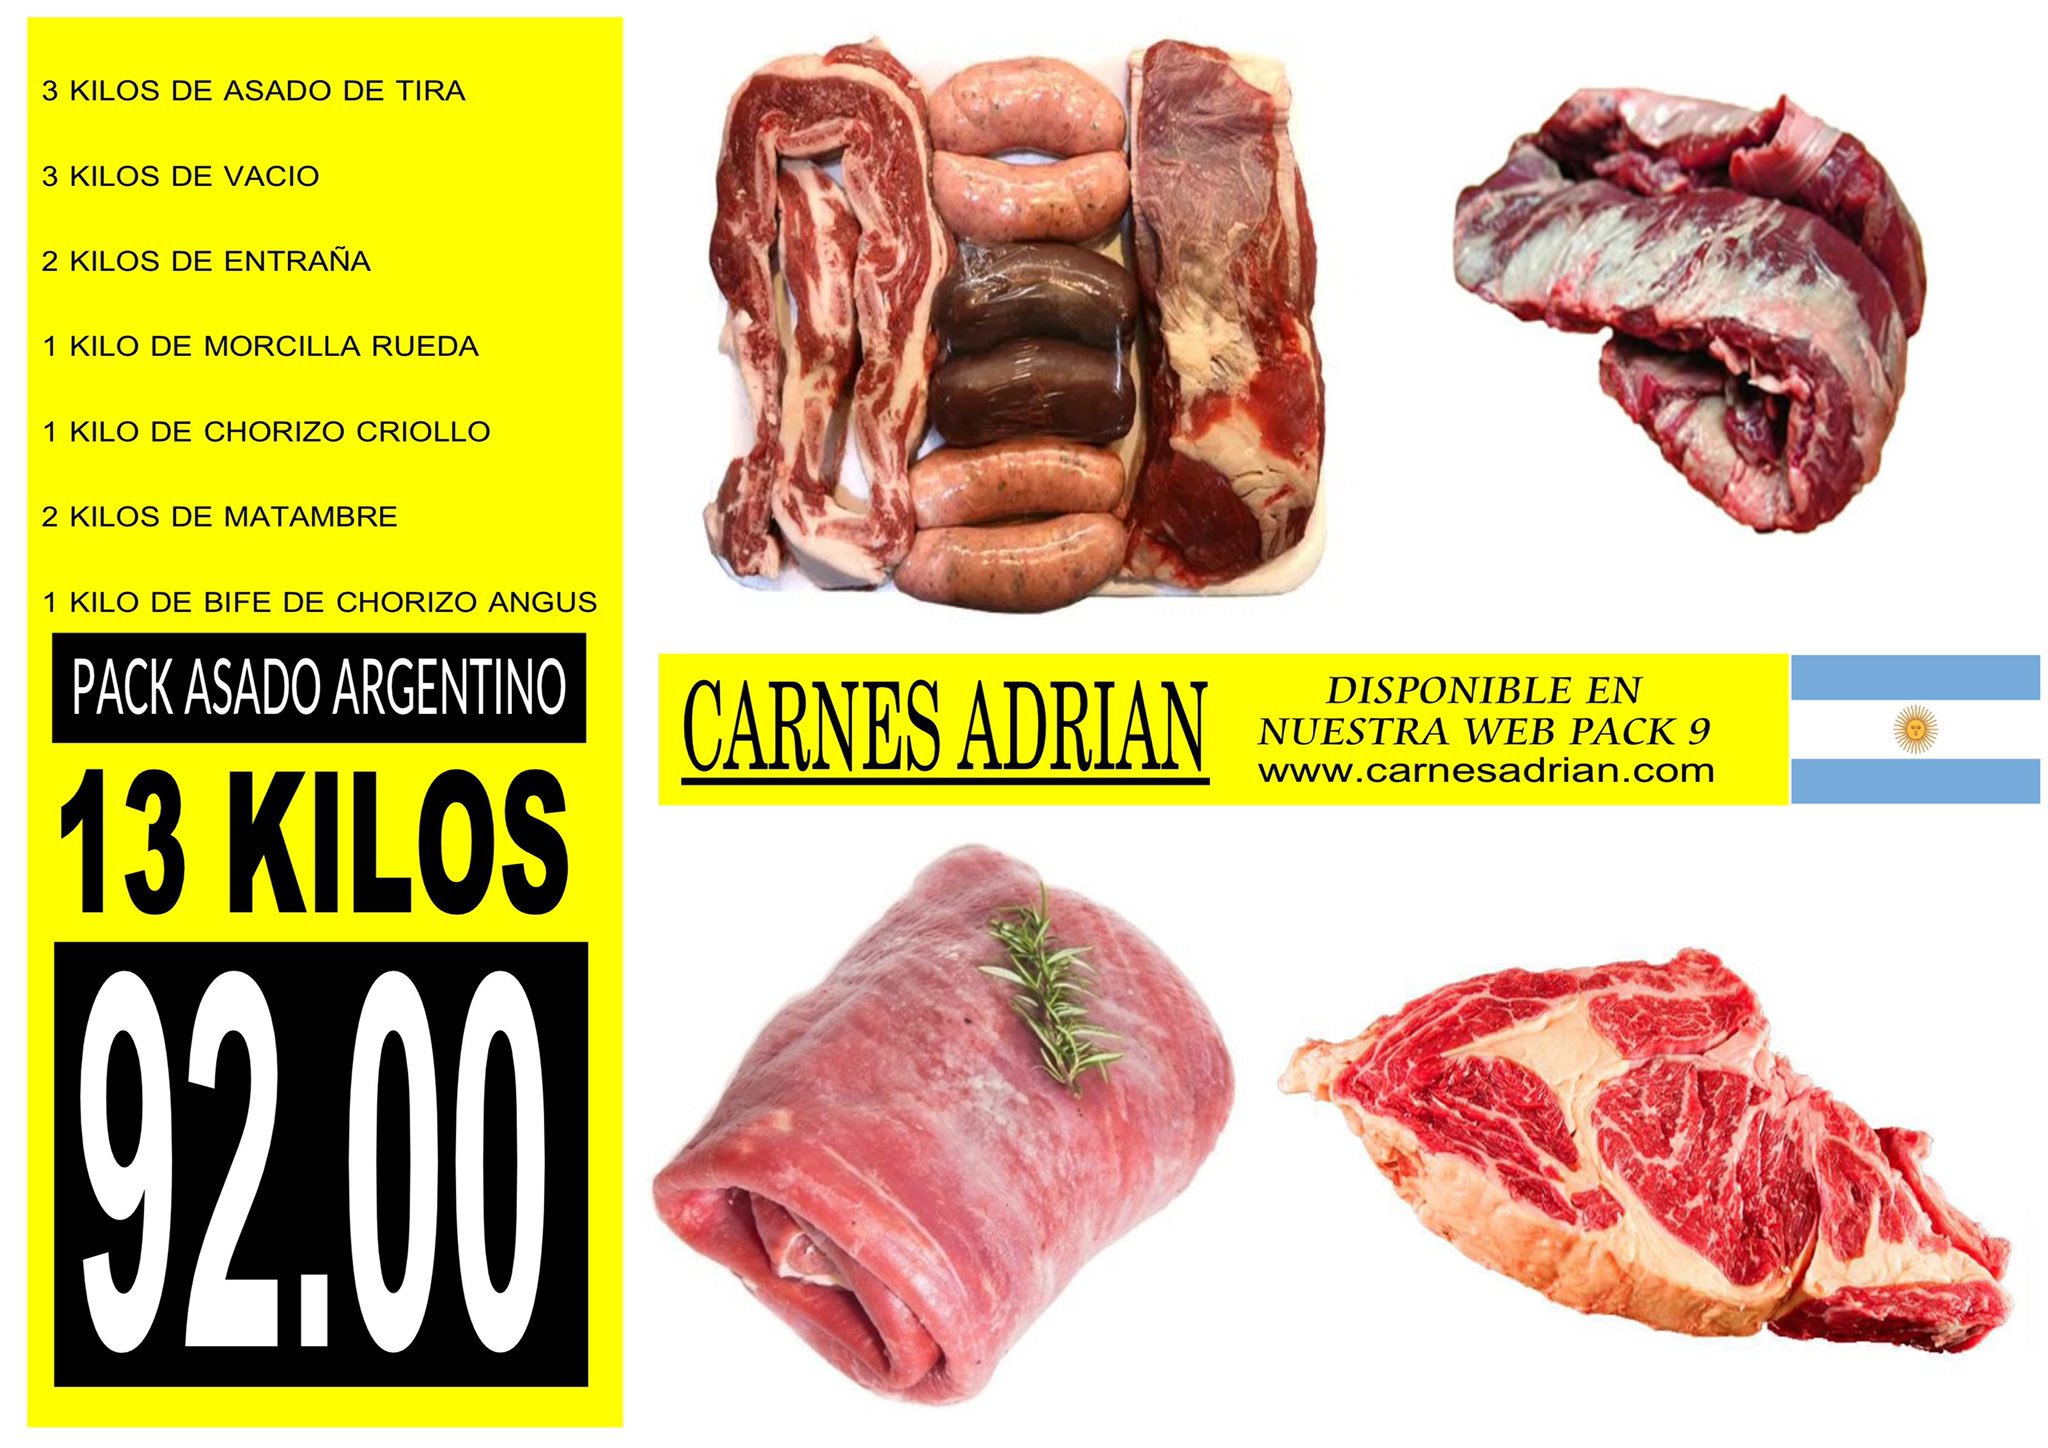 Carnes adrian precios